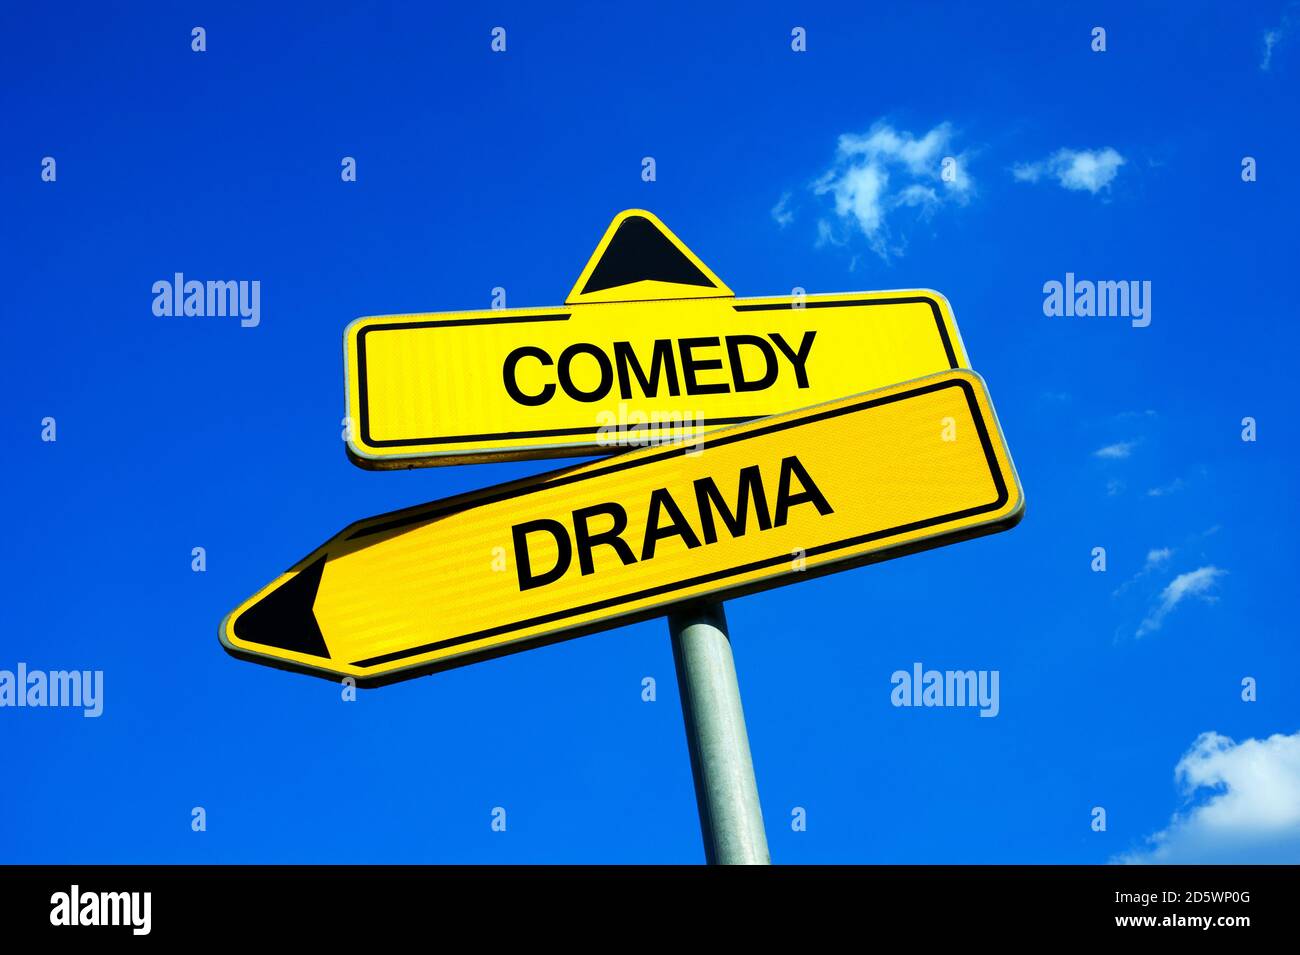 Comedia vs Drama - señal de tráfico con dos opciones - elegir un tema serio y pesado vs divertido y ligero argumento de juego en el teatro o película en el cin Foto de stock